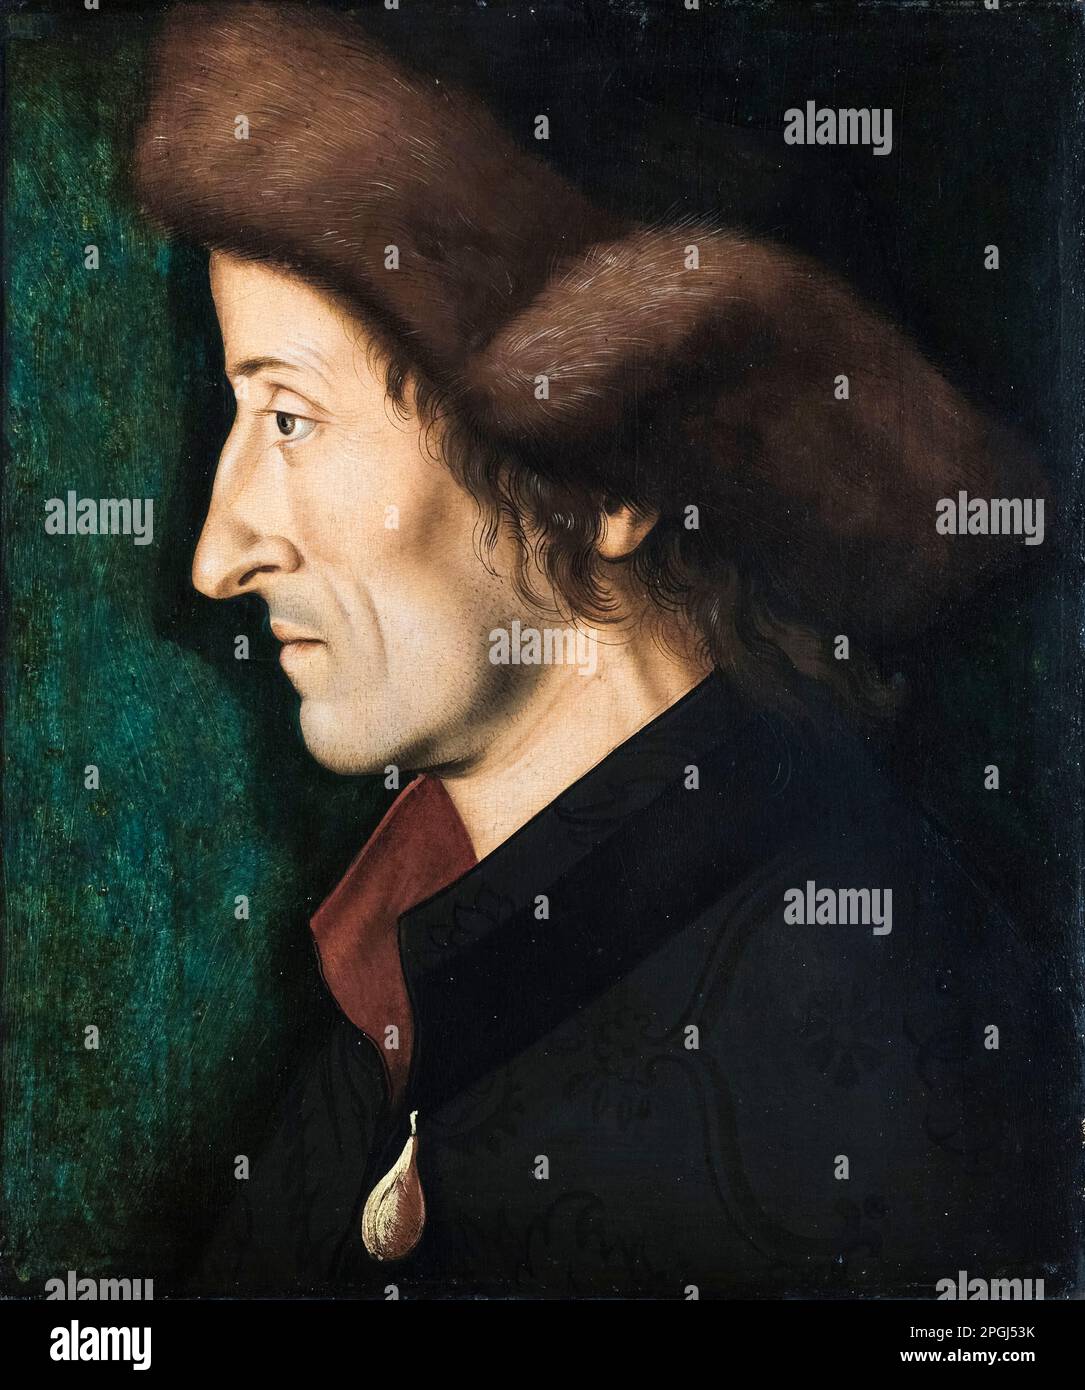 Sebastian Brant (1457/8-1521), deutscher Humanist und Satiriker, Porträtmalerei in Ol auf Holz von Hans Burgkmair dem Ältesten, 1508 Stockfoto